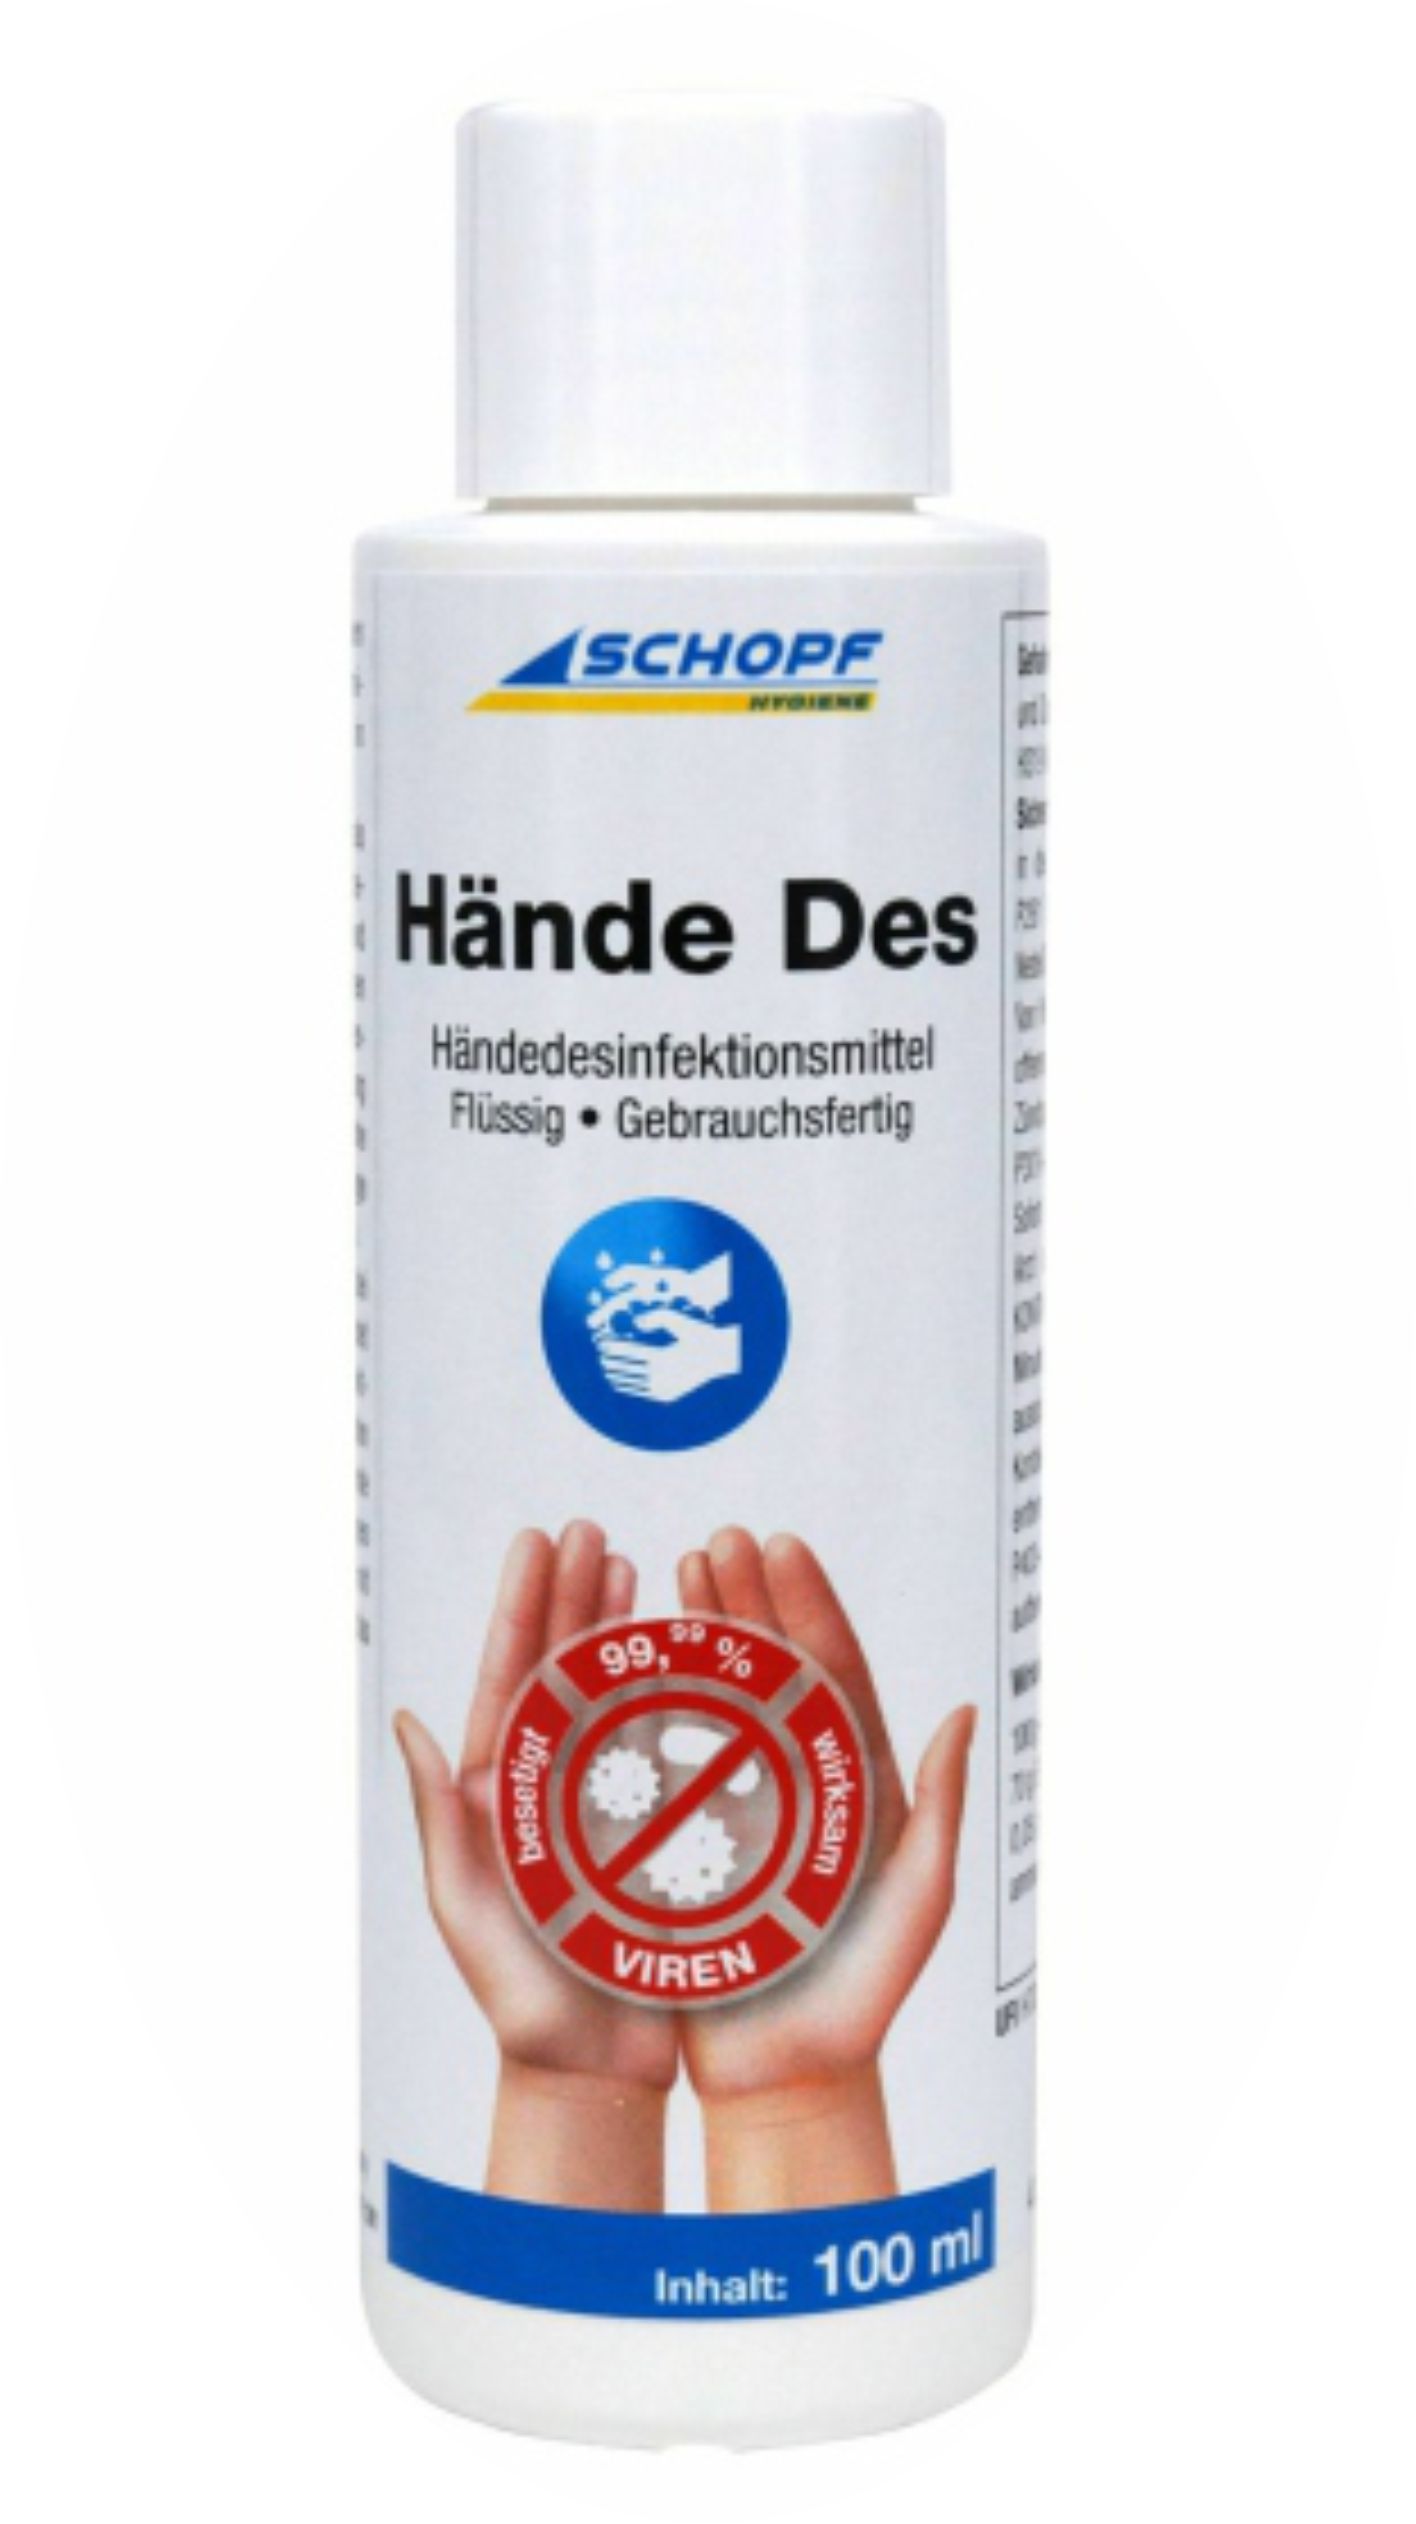 Hände Des - Handdesinfektionsmittel